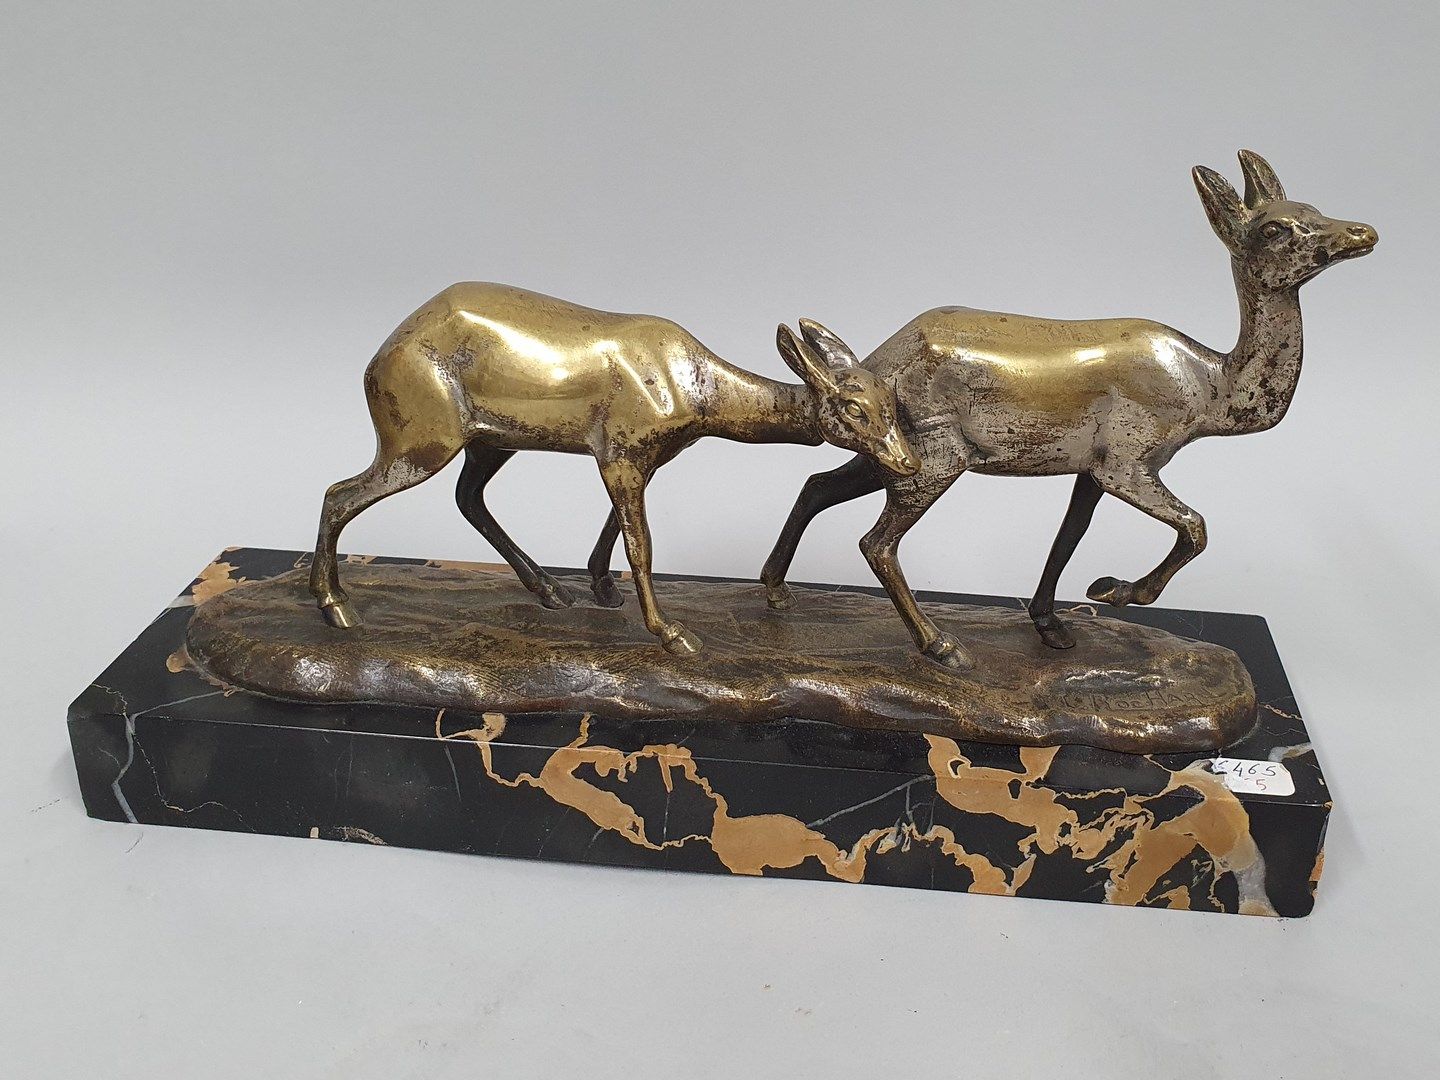 Null 罗沙尔-伊雷妮(1906-1984)

两只鹿

黑色纹理大理石底座上的银色古铜器

在露台上: I. Rochard

古铜色的重要磨损，有氧化的痕&hellip;